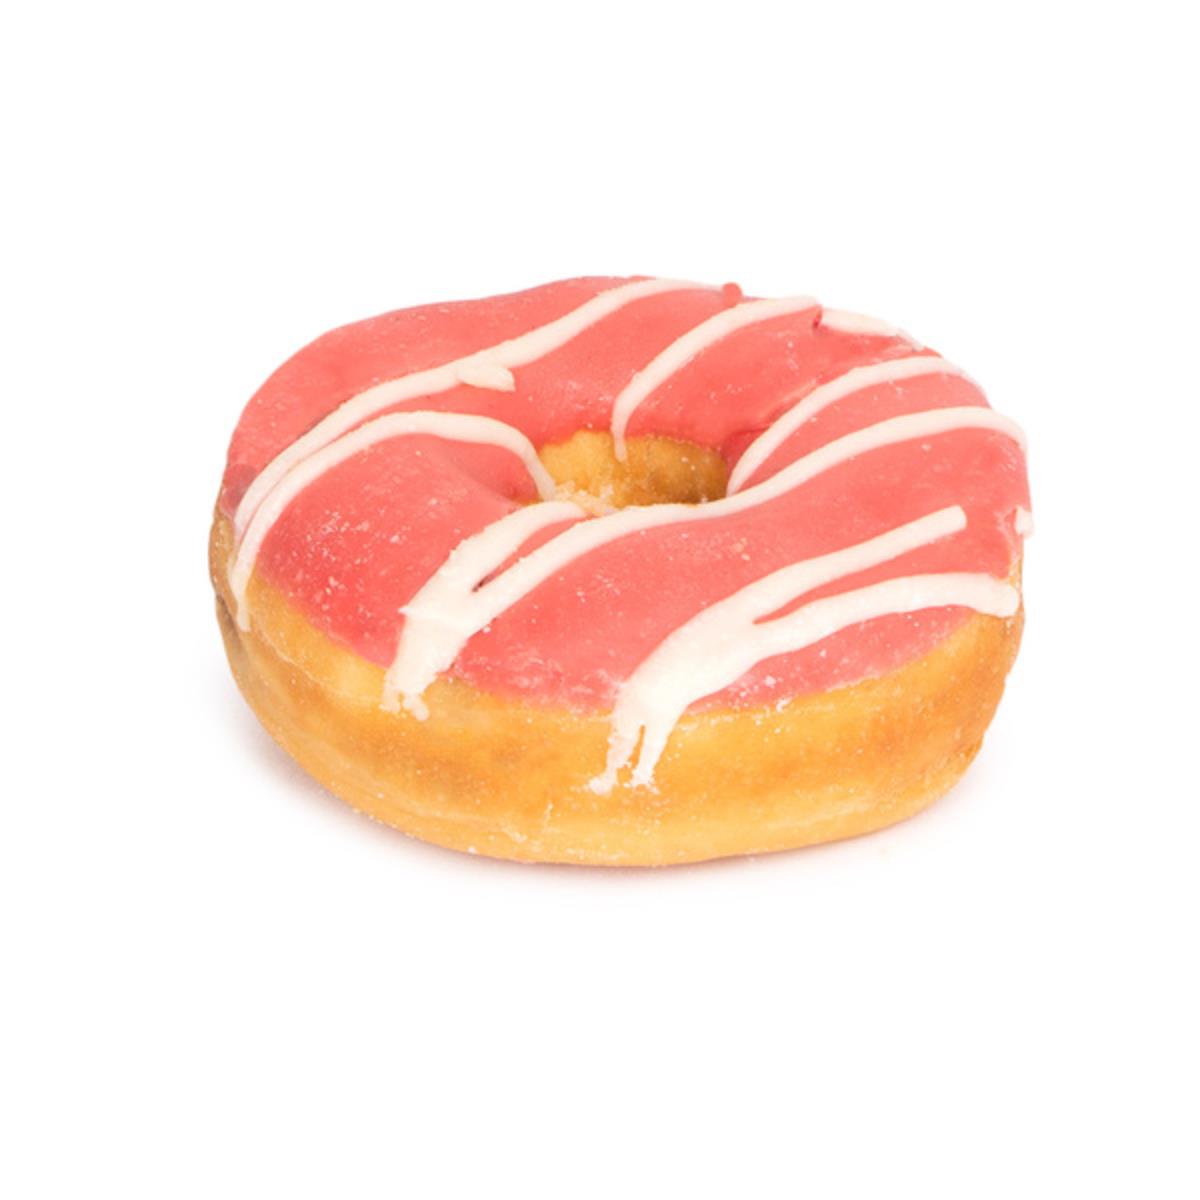 ring-donut-frutas-vermelhas-un-1.jpg